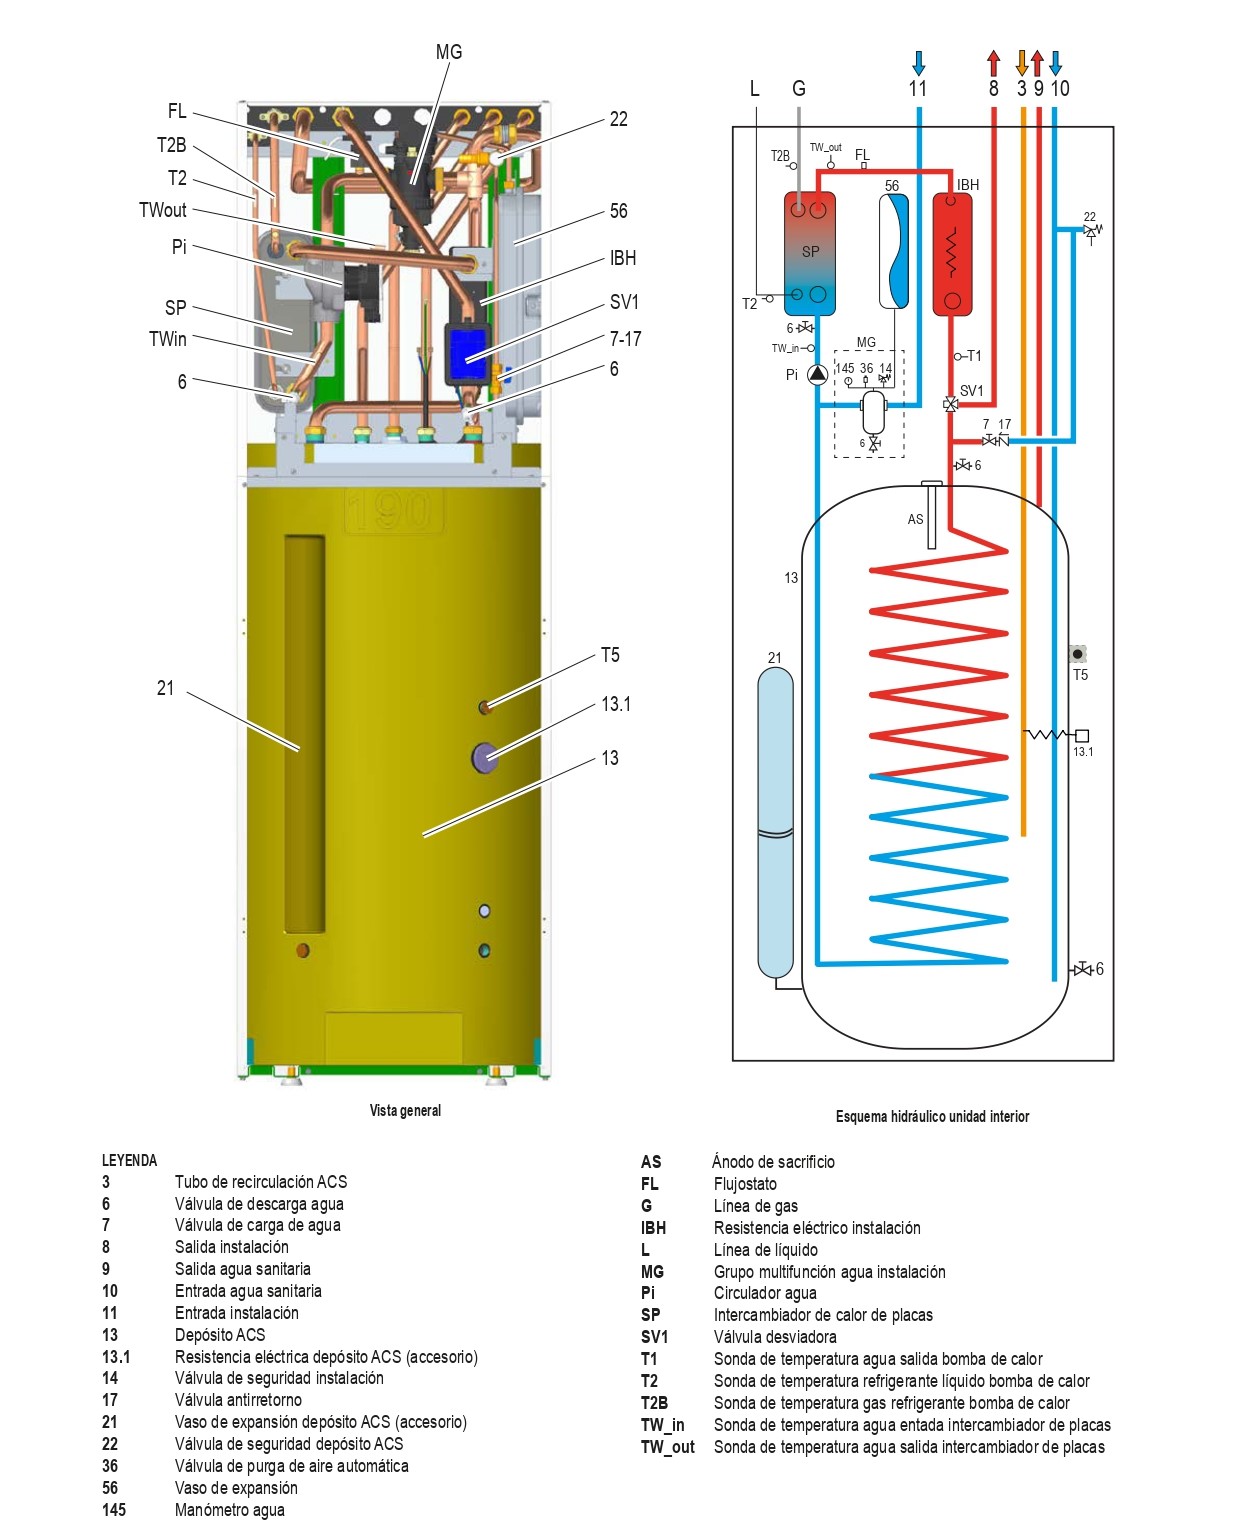 Esquema hidráulico de la unidad interior bomba de calor ferroli omnia st 3.2